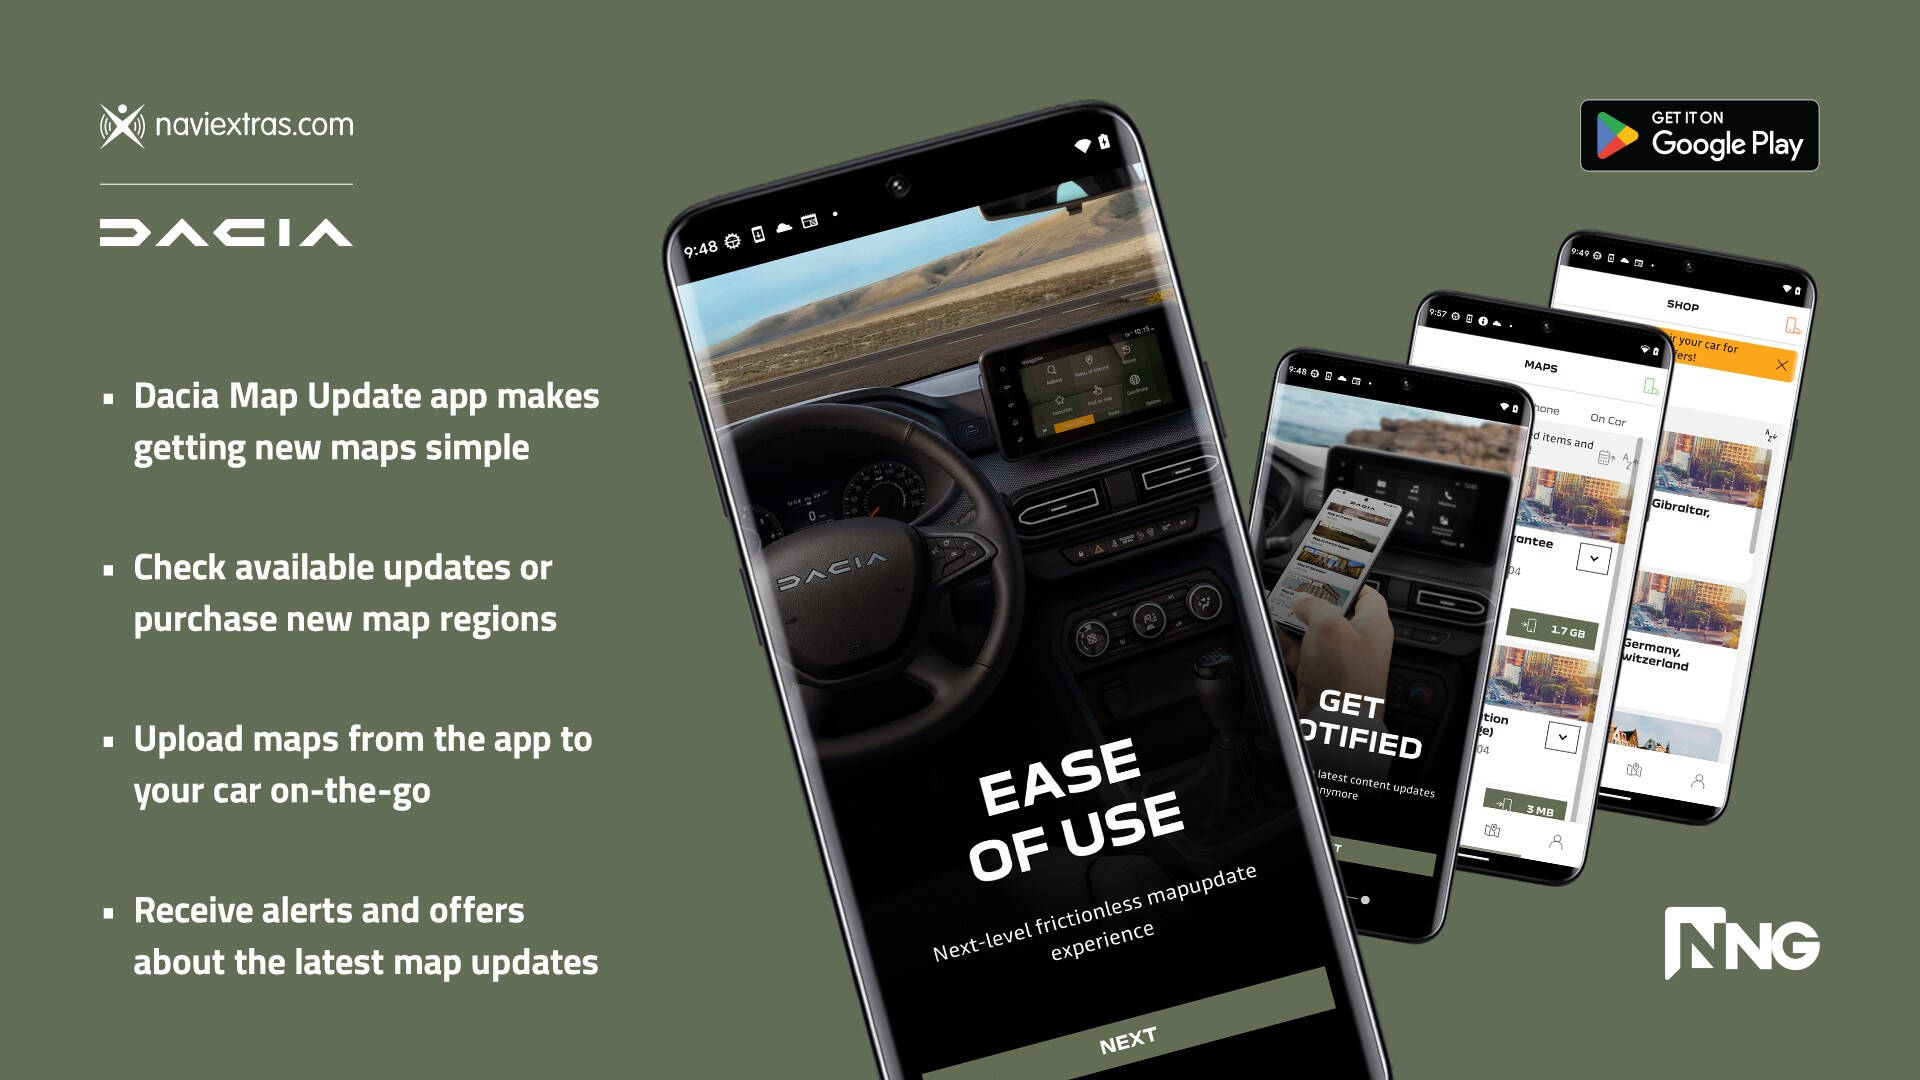 Dacia と NNG はスマートフォンベースの地図更新の先駆者です